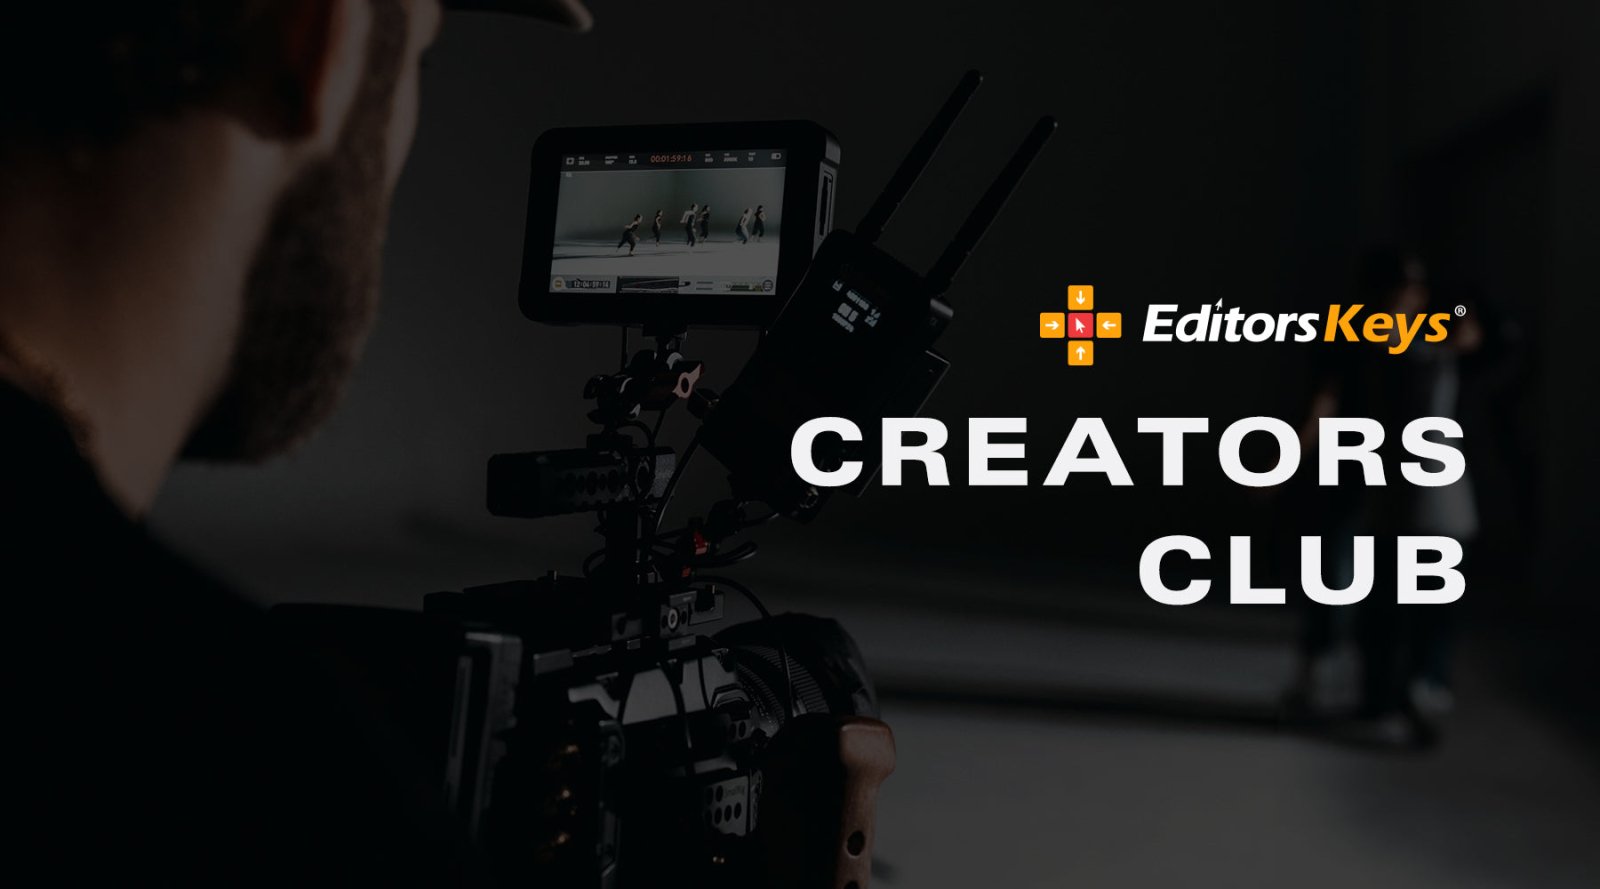 The Creators Club | Editors Keys Brand Ambassadors - Editors Keys